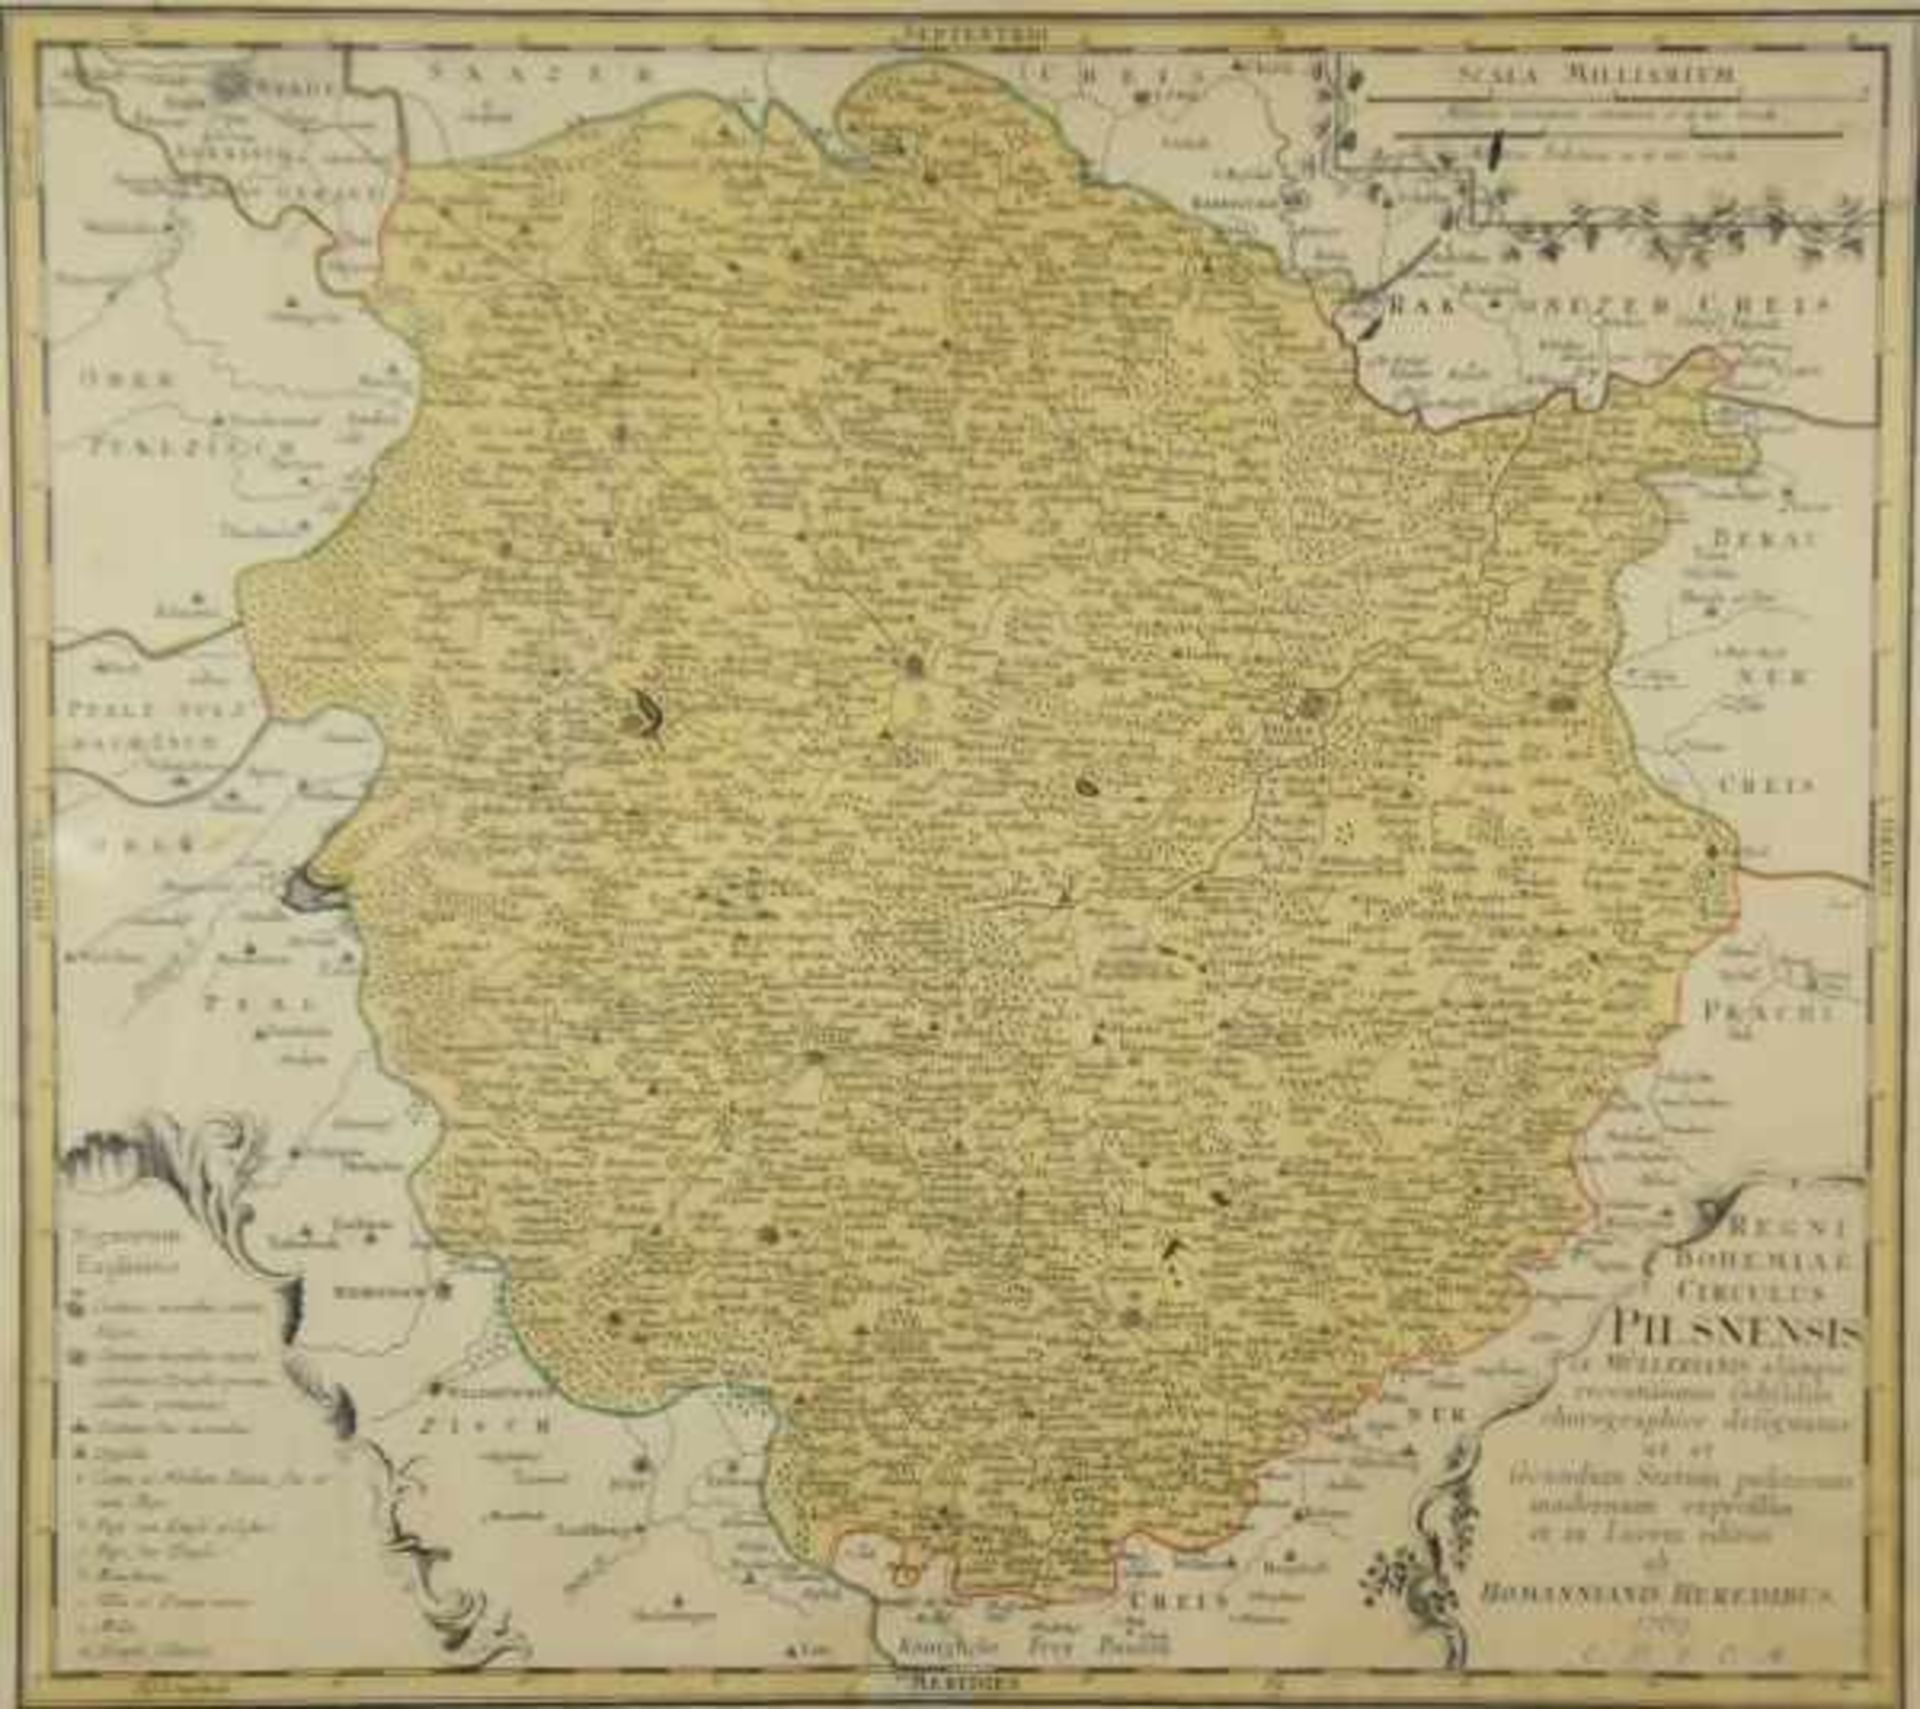 TOPOGRAFIE Landkarte Pilsen, rechts unten Kartusche mit Bezeichnung, Homannianis Heredibus, 1769,